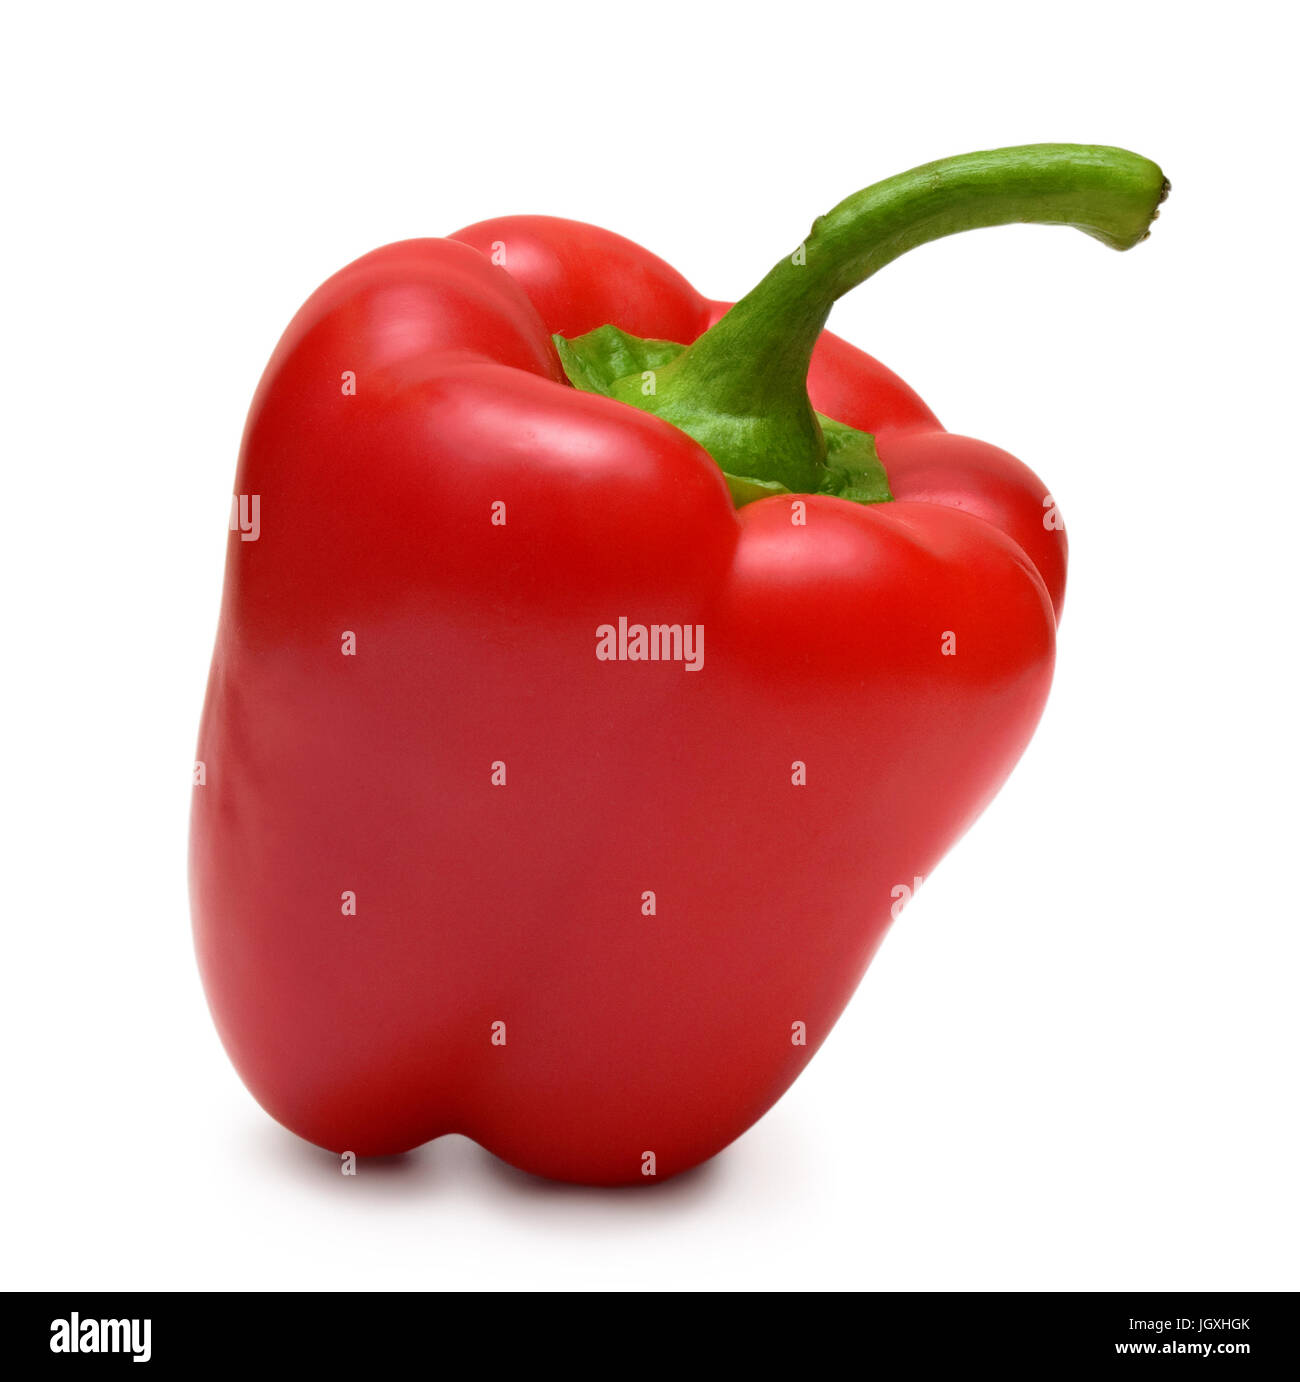 https://c8.alamy.com/comp/JGXHGK/bell-pepper-bulgarian-pepper-isolated-on-white-it-is-red-fresh-beautiful!-JGXHGK.jpg